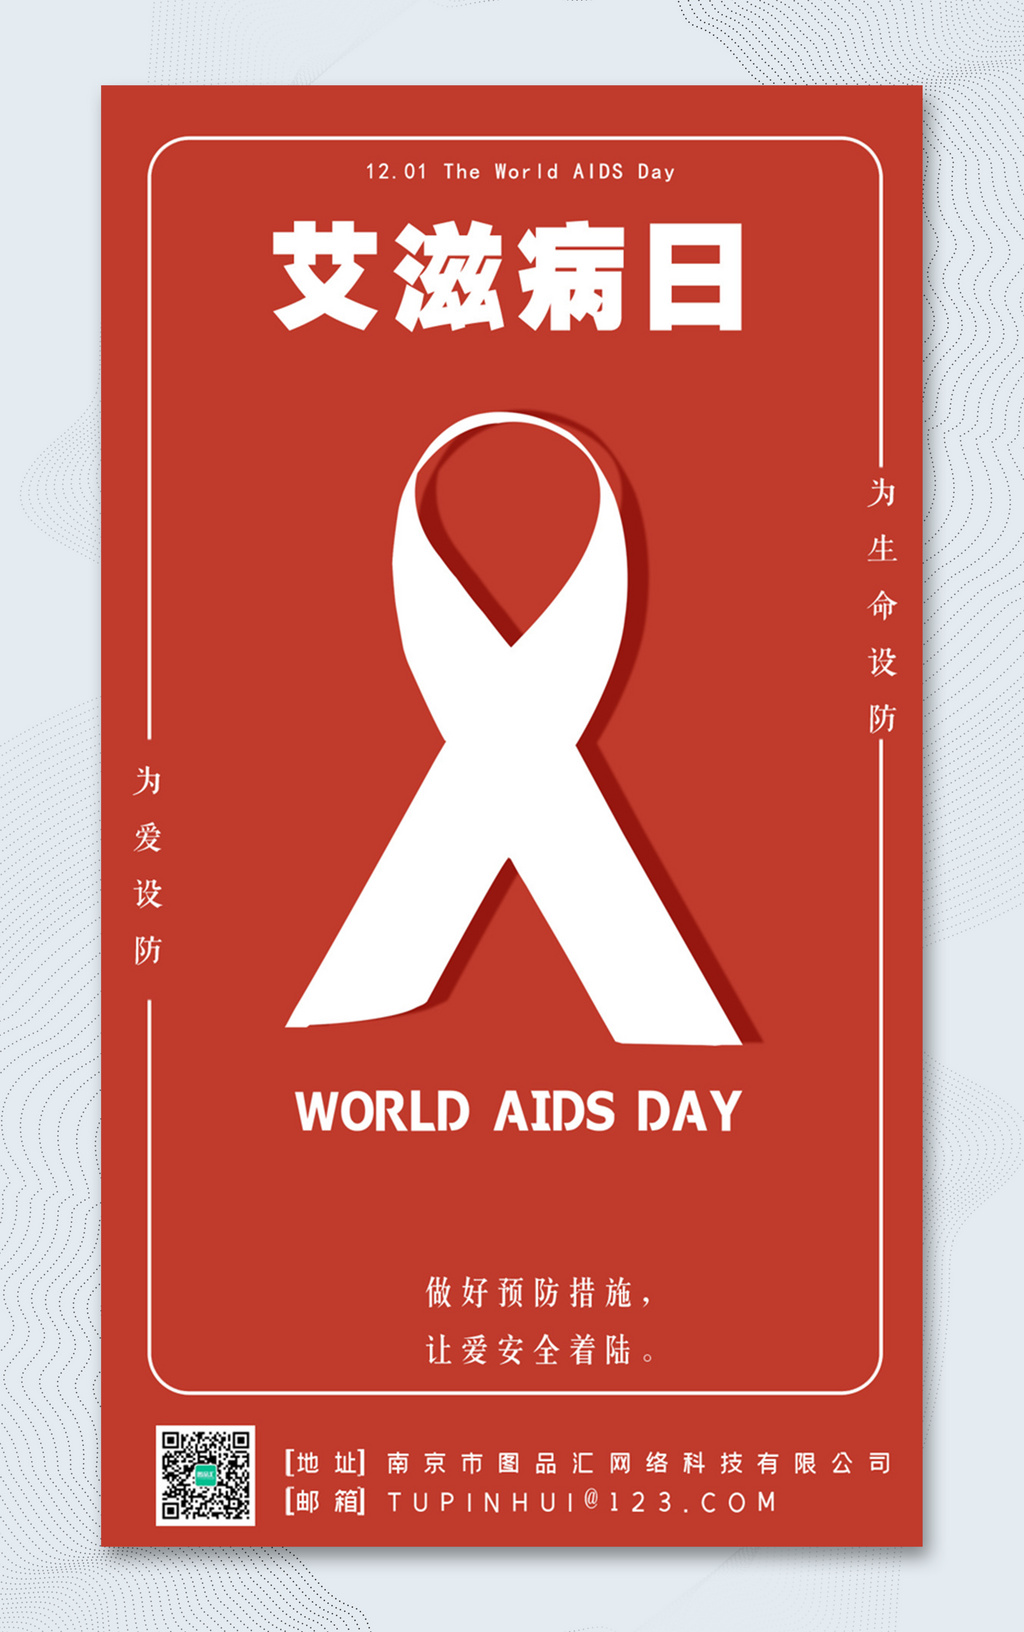 红色简洁艾滋病日公益海报